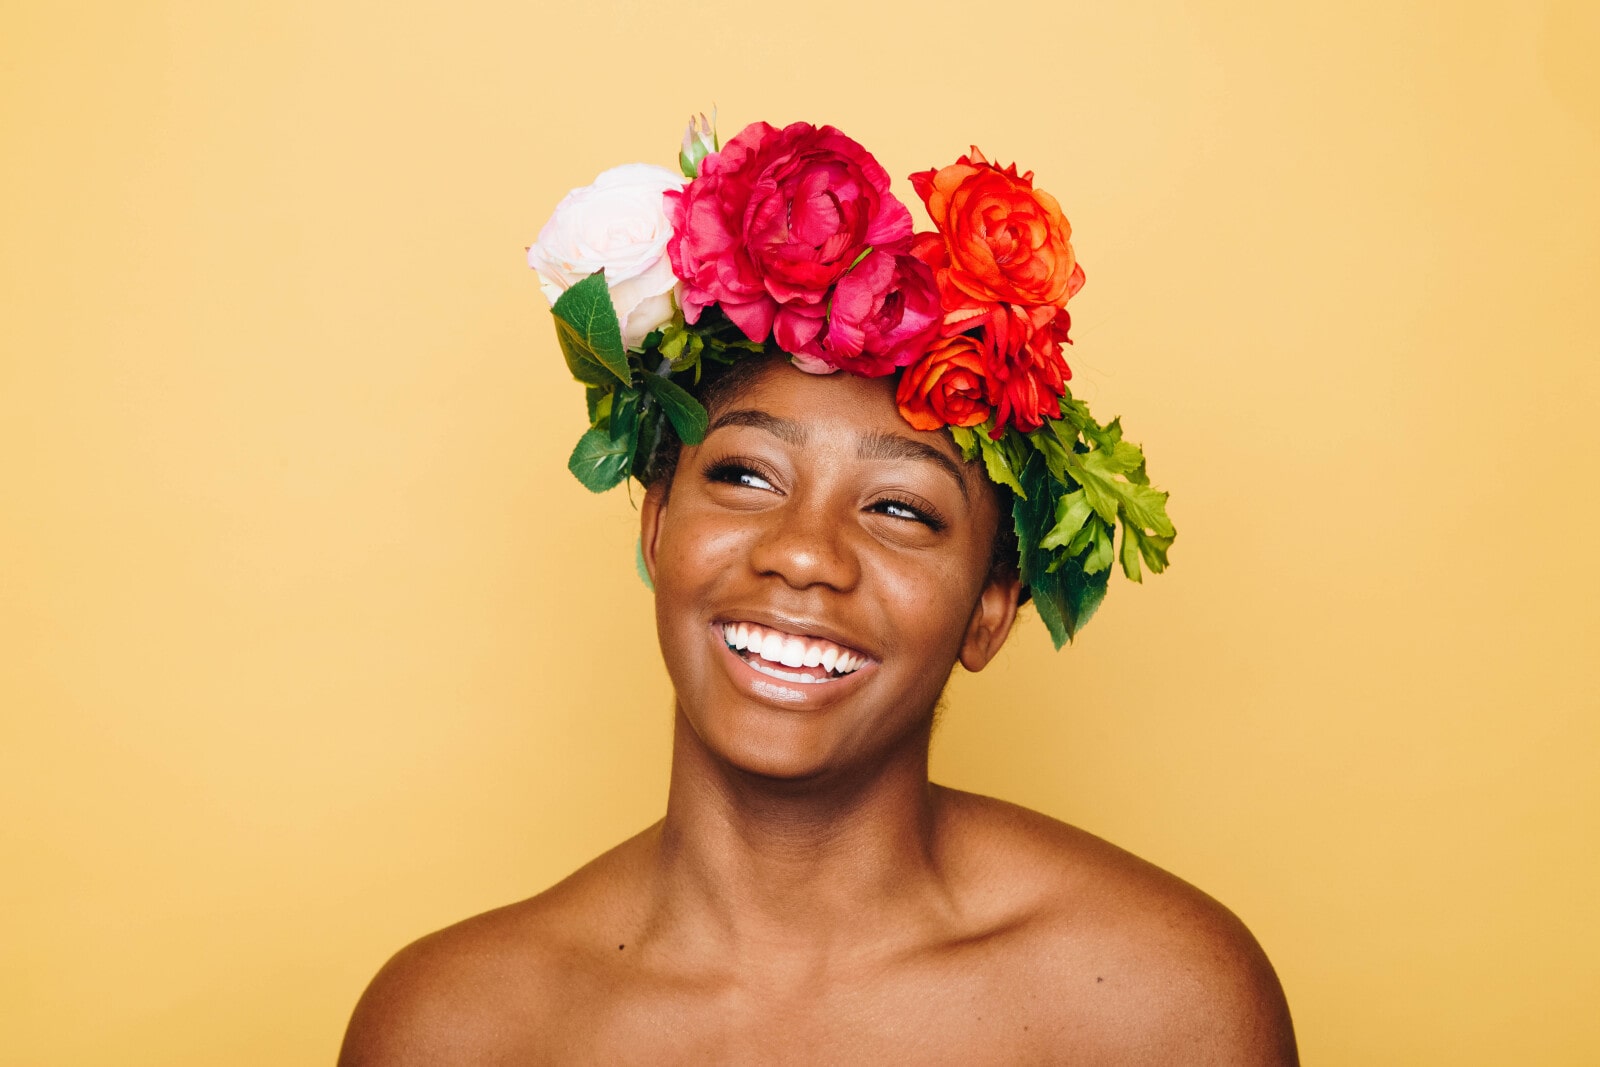 A woman wearing a flower crown